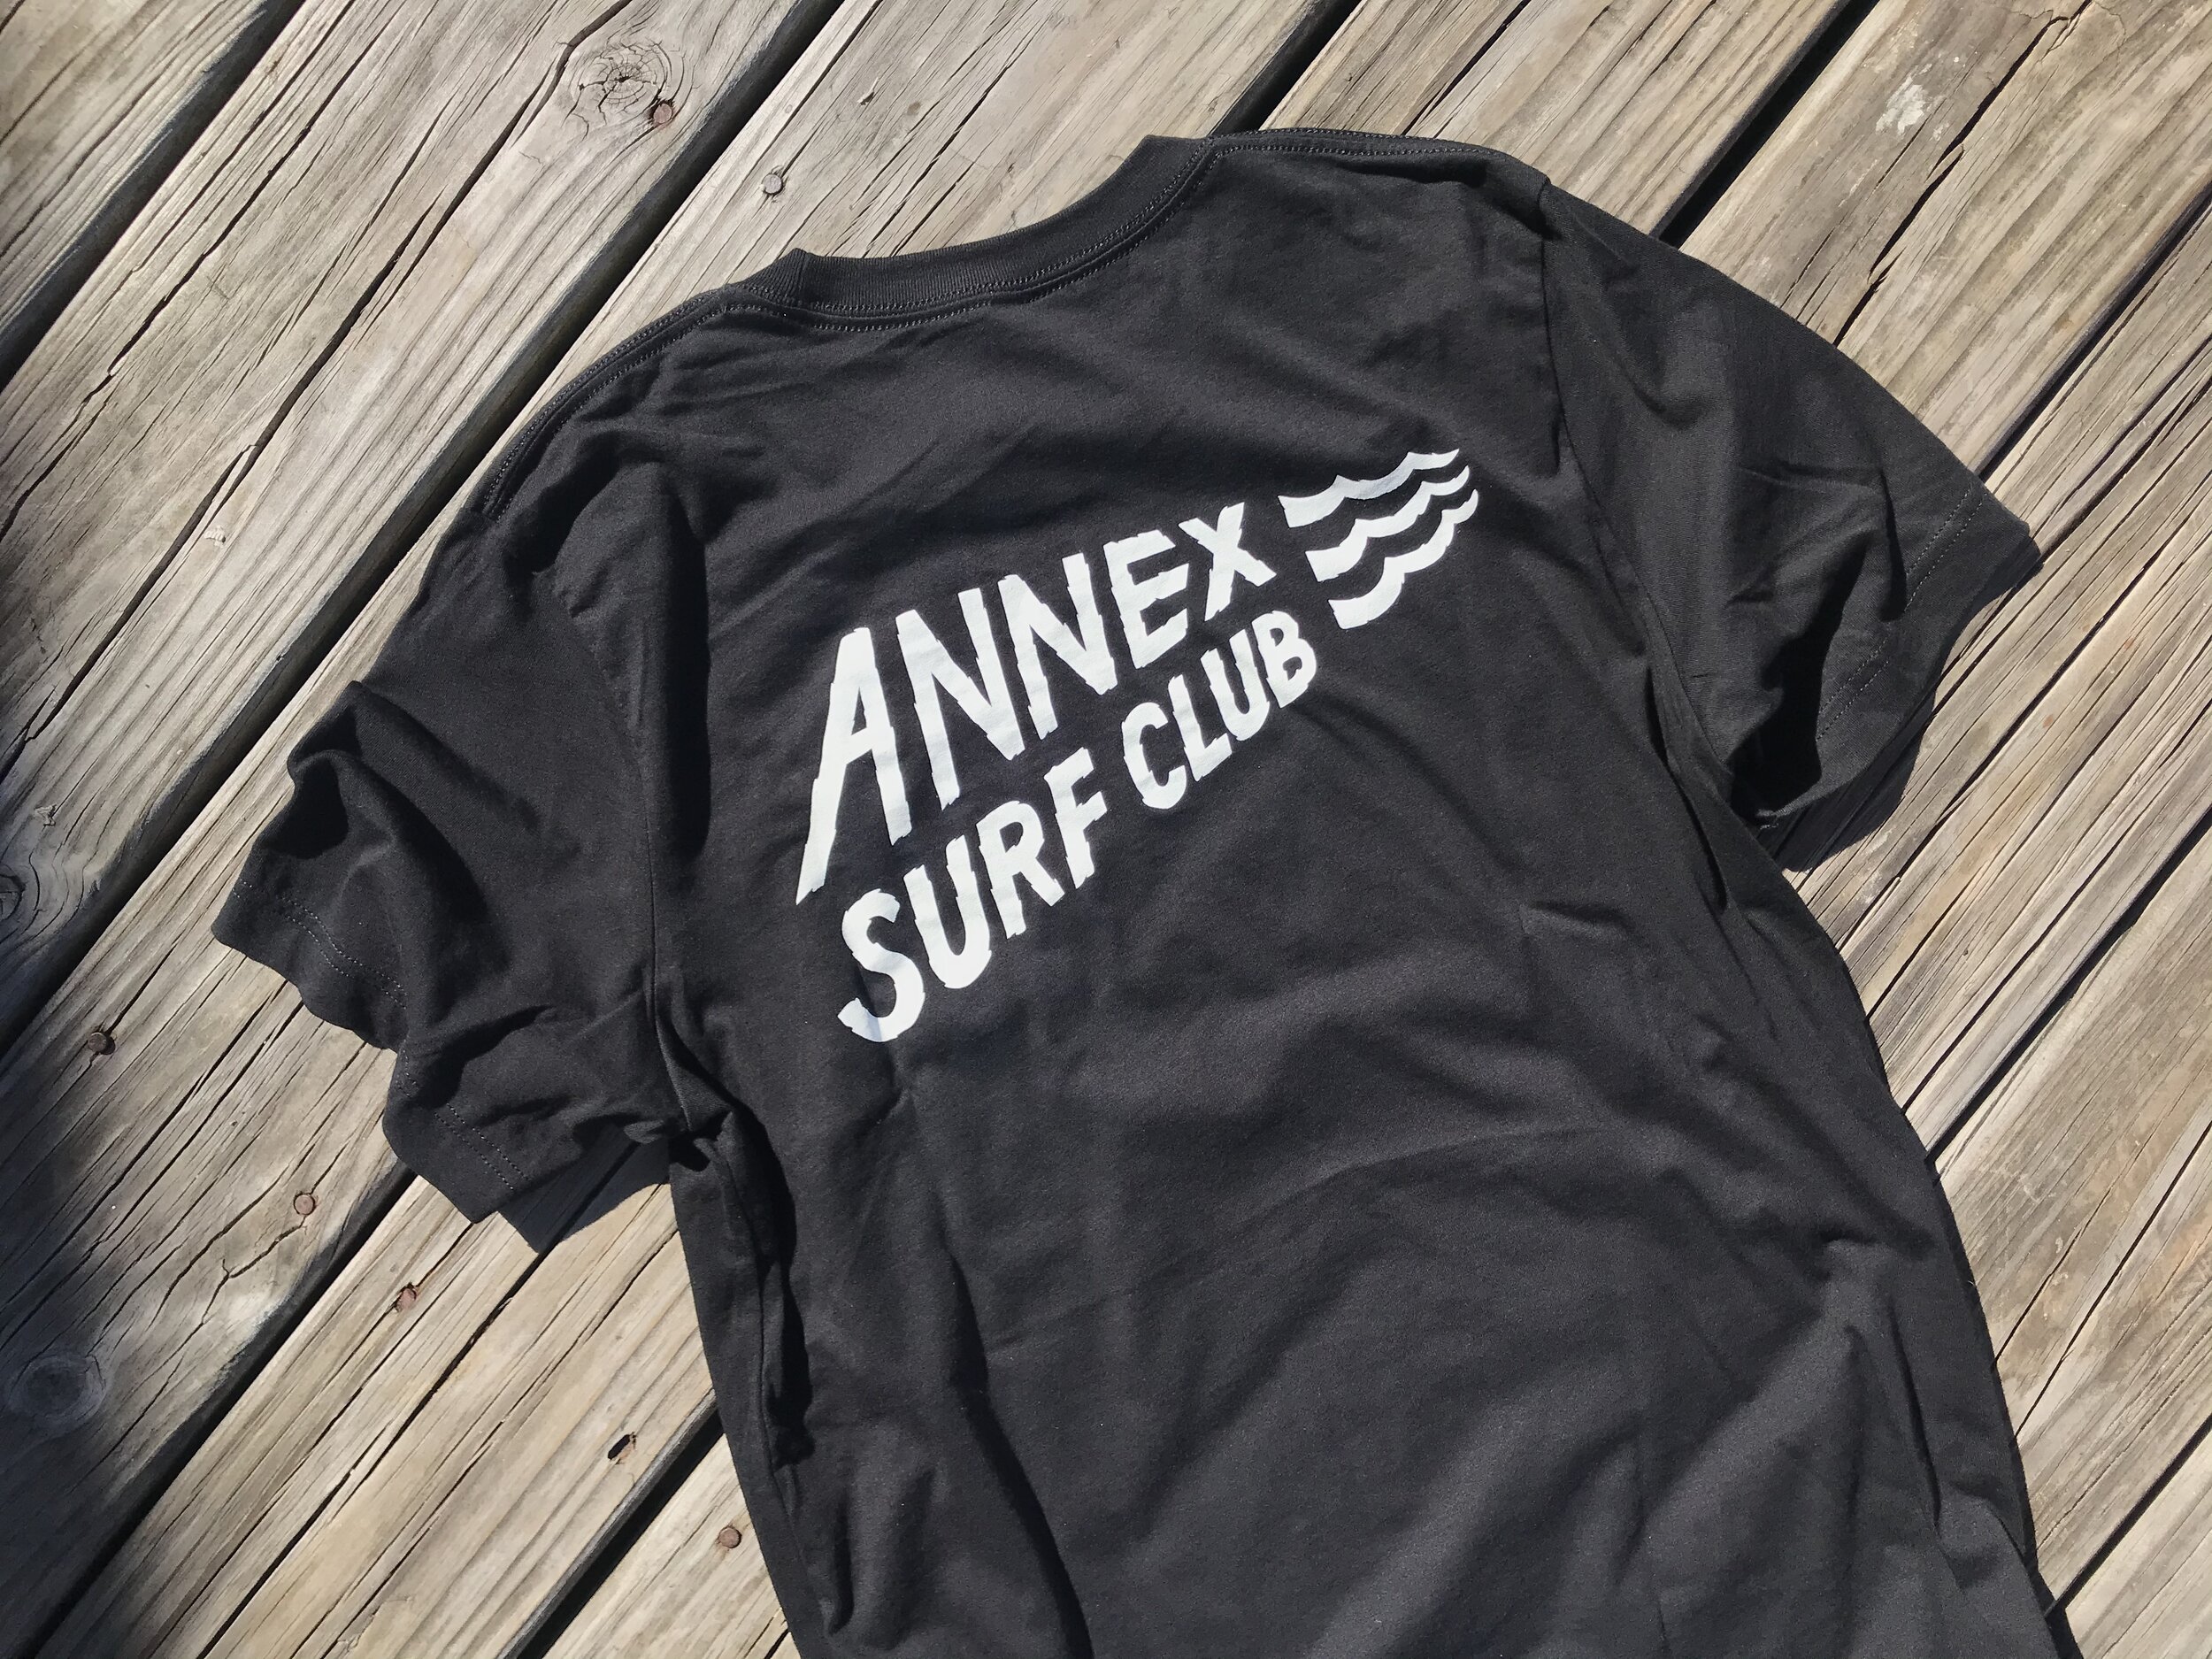 ANNEX SURF SUPPLY